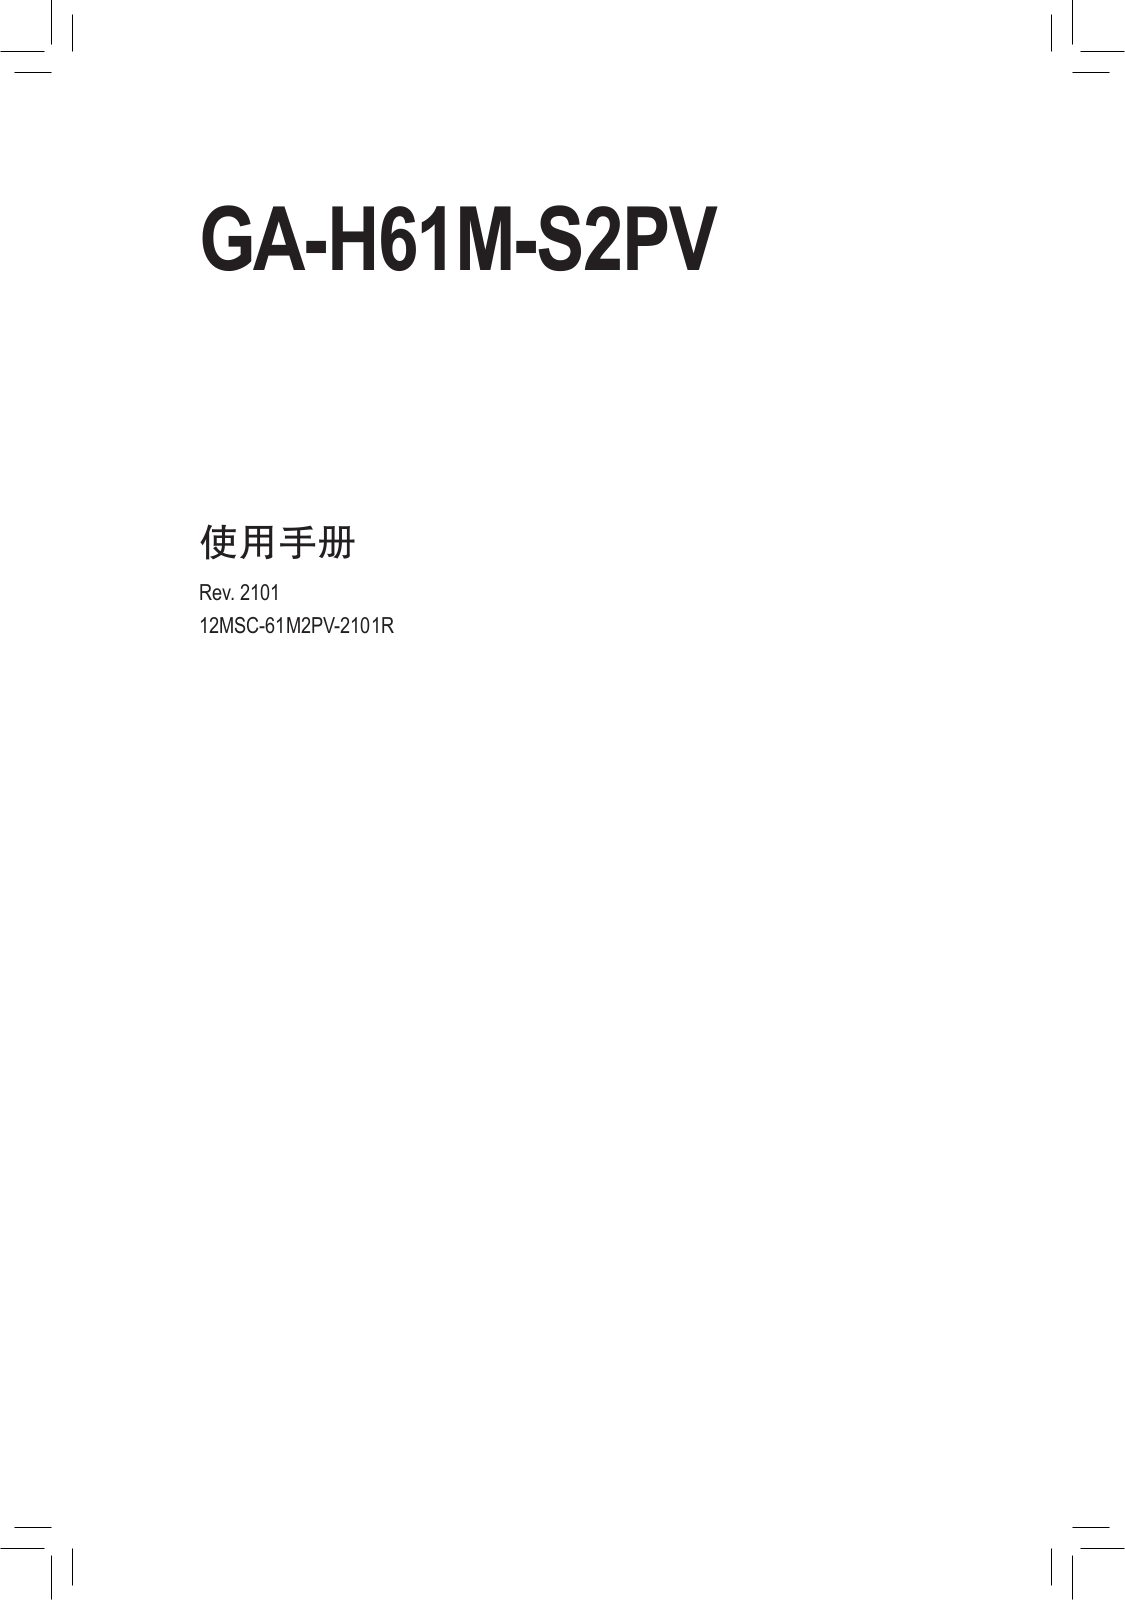 Gigabyte GA-H61M-S2PV User Manual